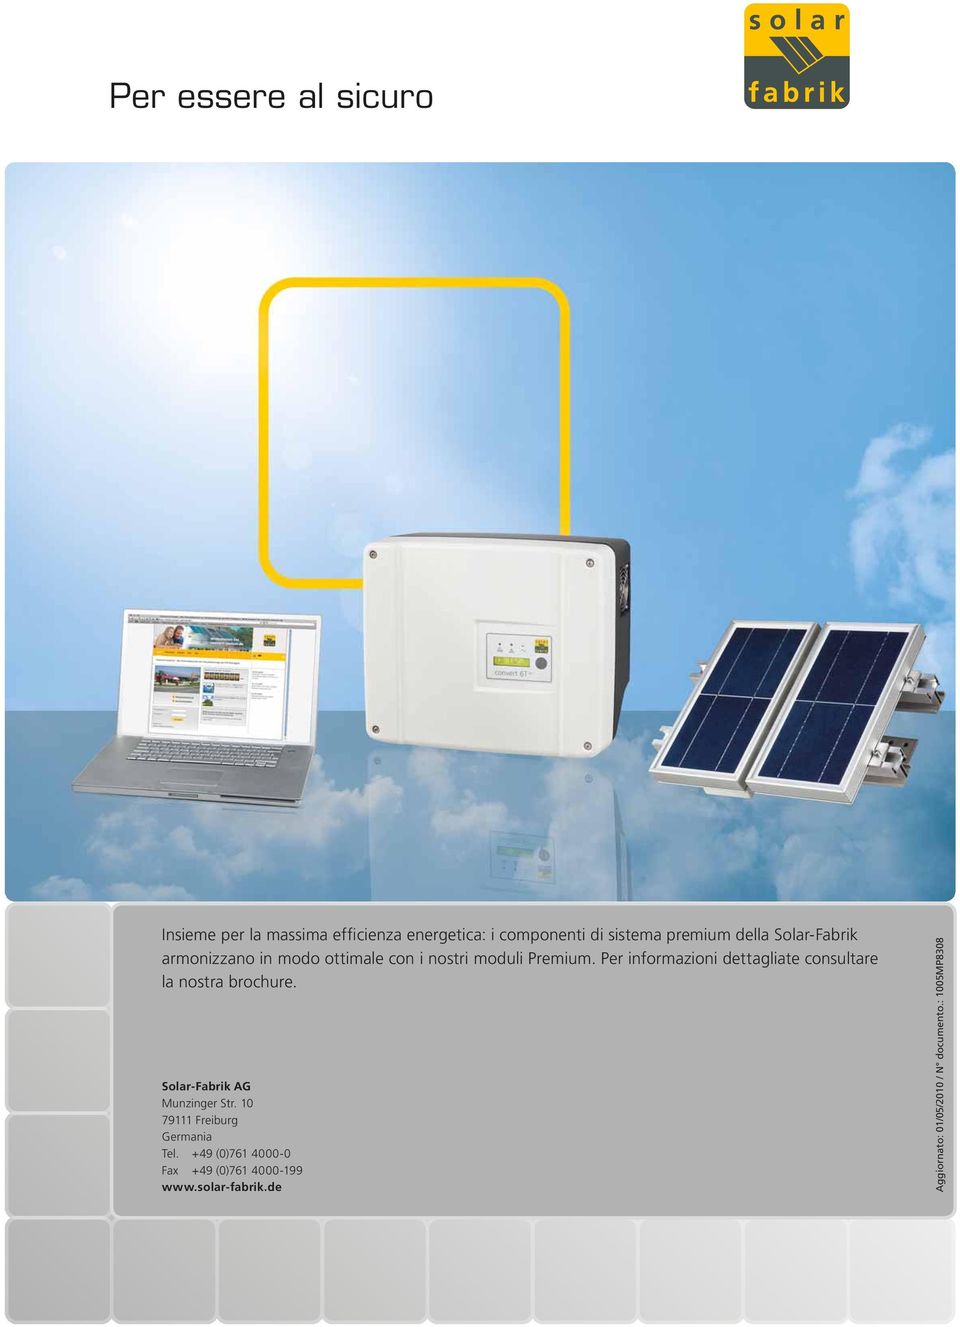 Per informazioni dettagliate consultare la nostra brochure. Solar-Fabrik AG Munzinger Str.